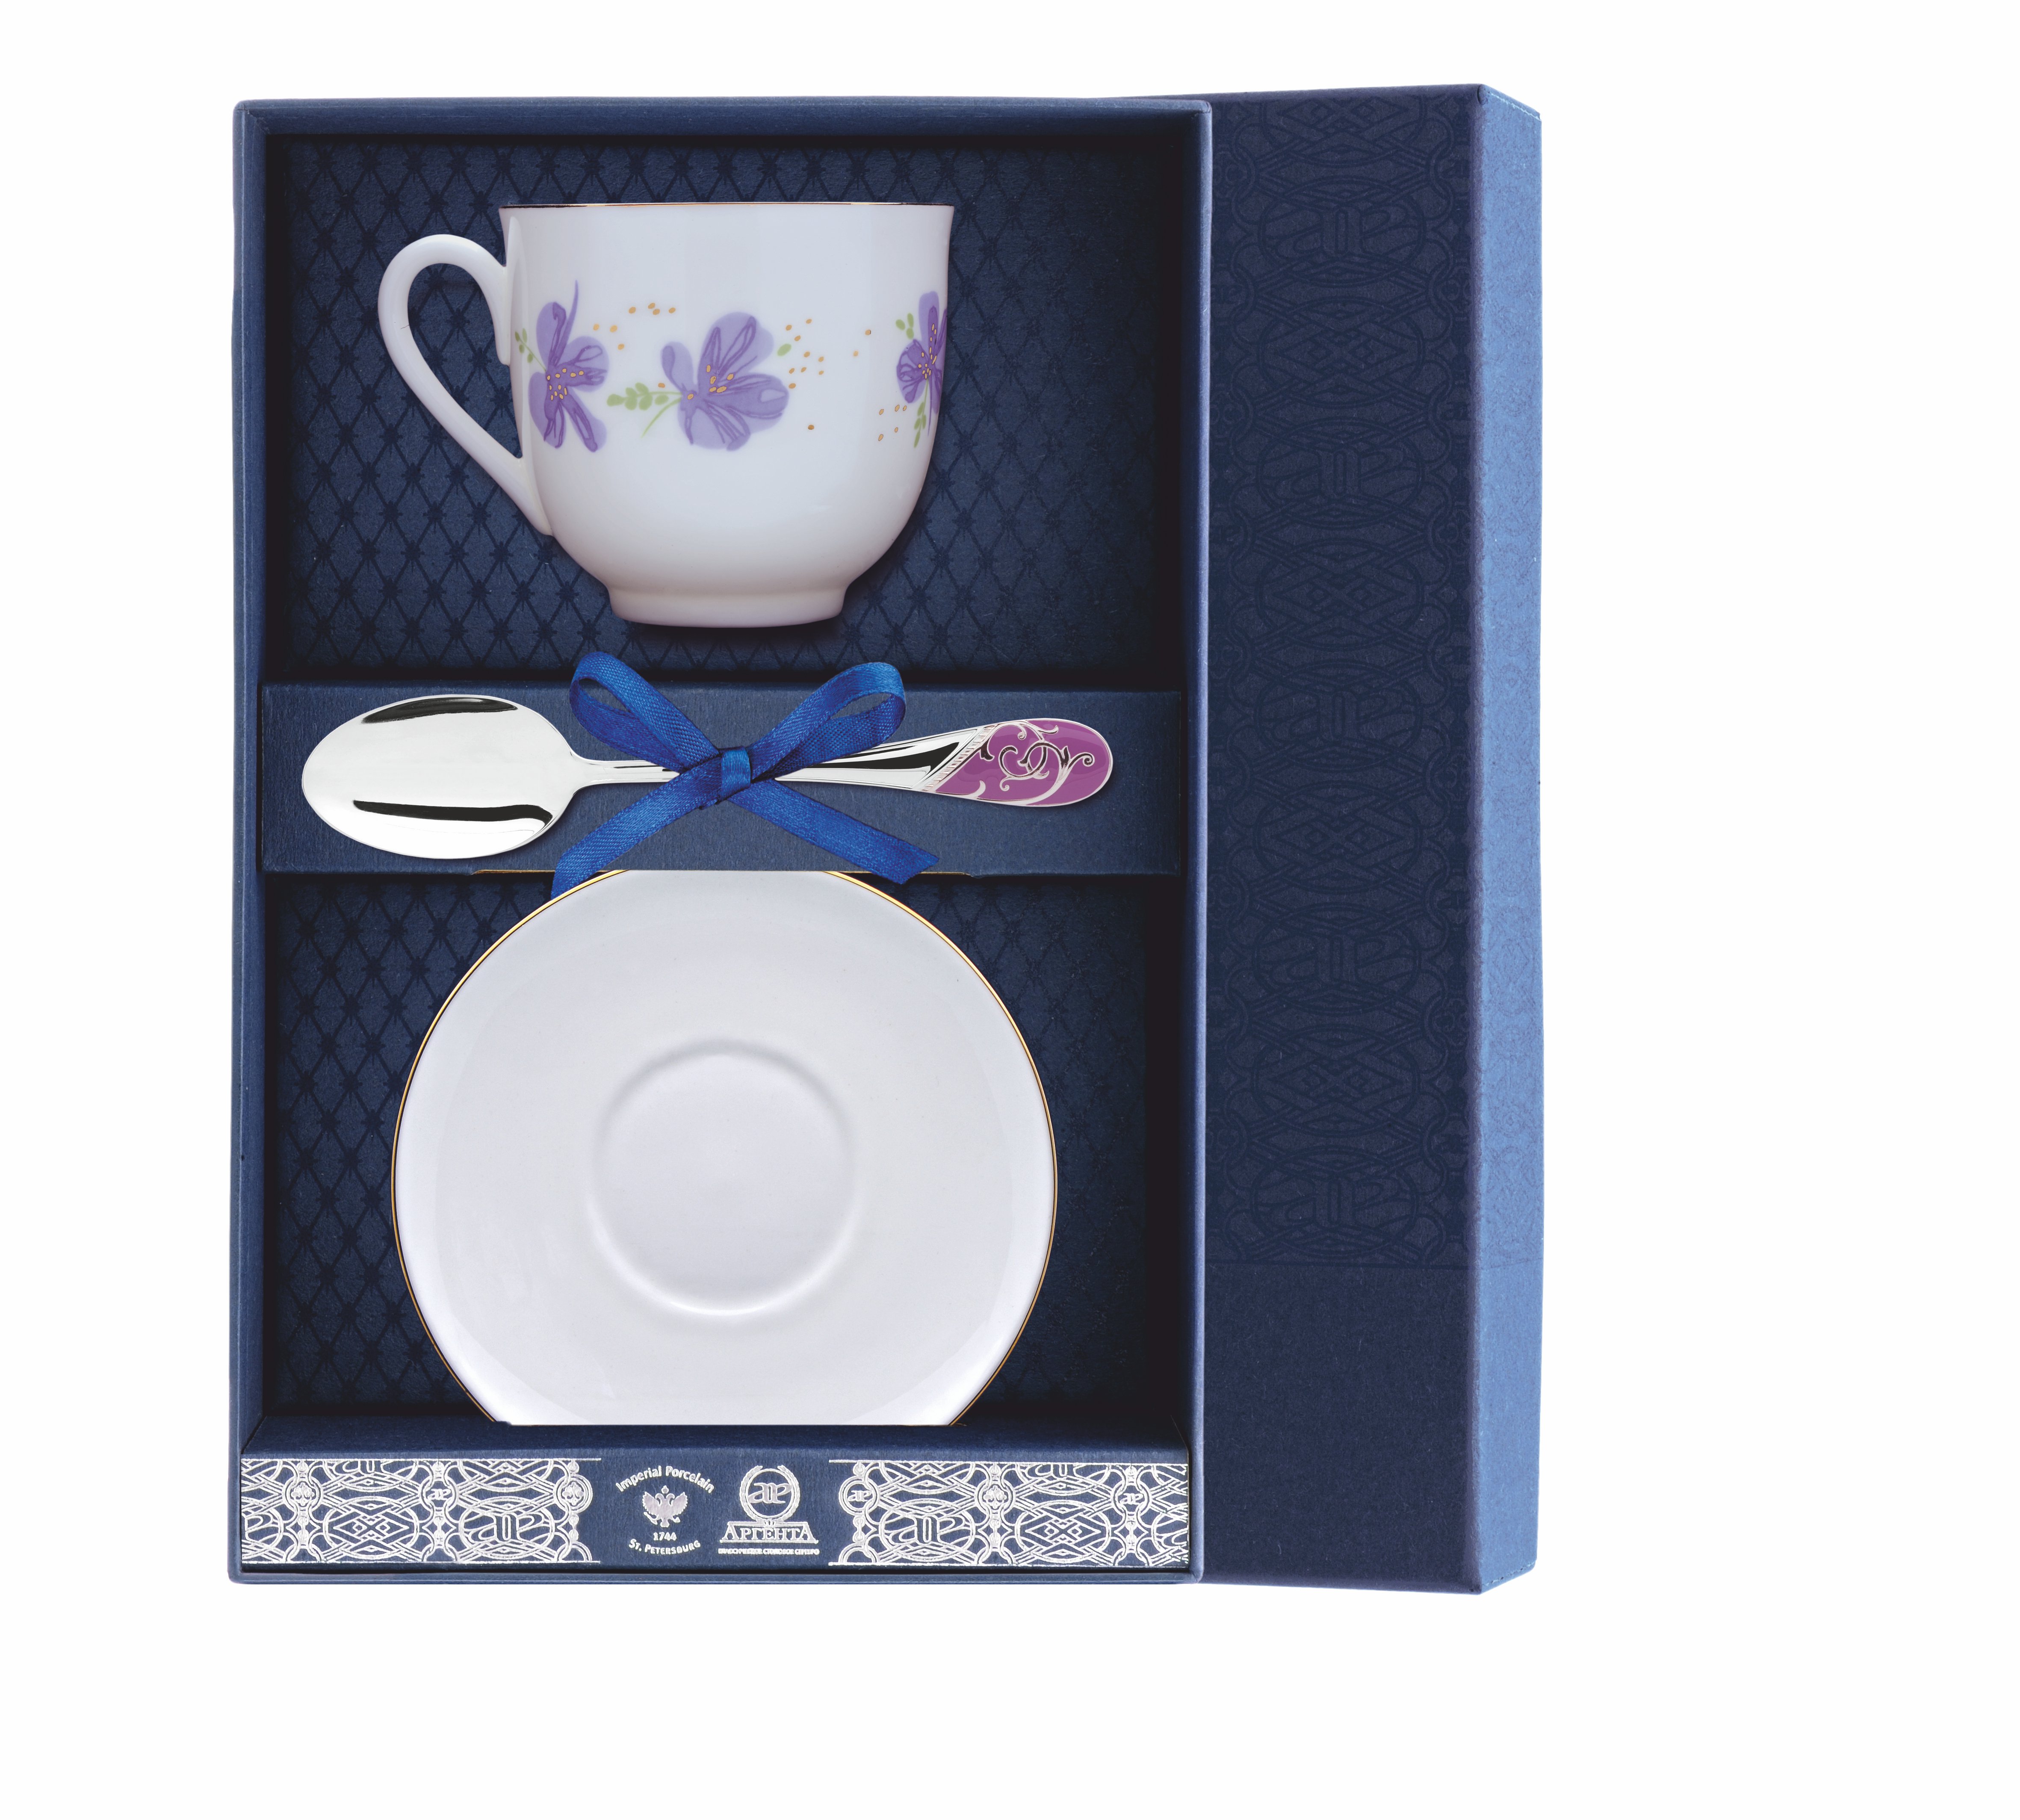 Набор АргентА чайный Ландыш-Сиреневые цветы Чашка чайная Блюдце Ложка серебряная 013Ф03